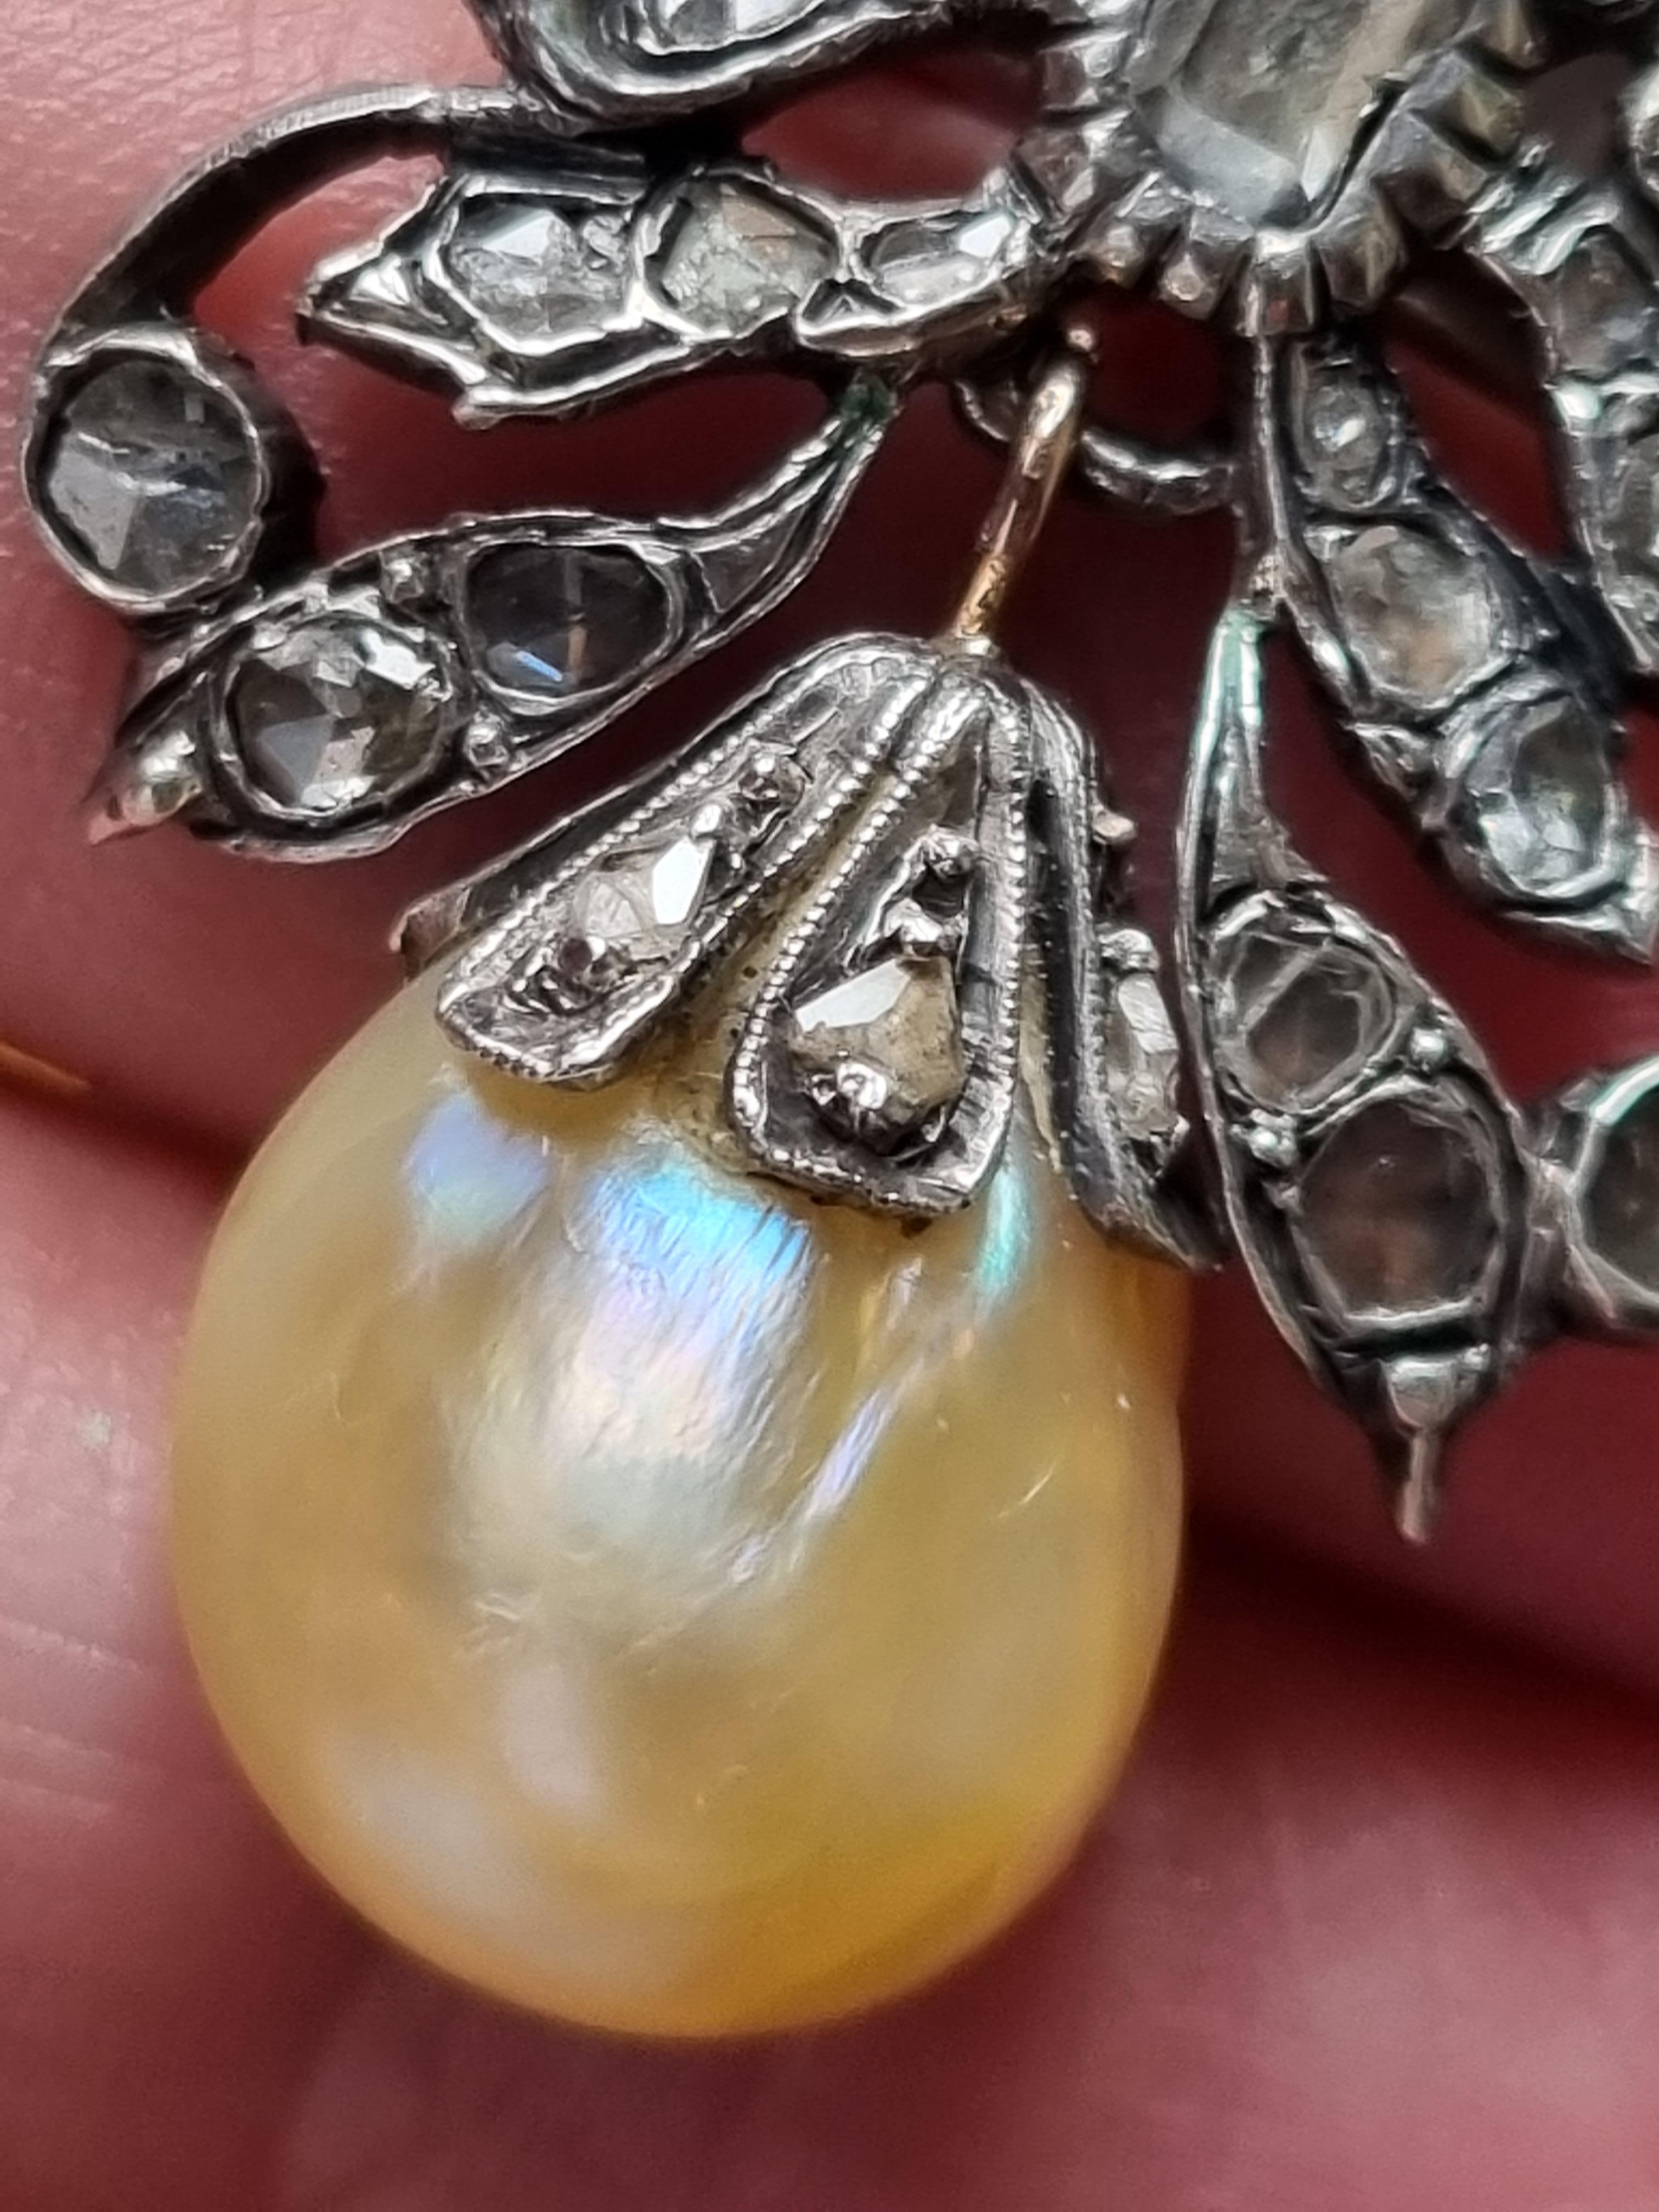 Seltene Basra-Salzwasserperle und Diamant-Anhänger/Brosche, ca. 18. Jahrhundert. (Pinctada Radiata, laut GIA-Zertifikat Familie der Pteriidae)
Die Perle hat eine tropfenähnliche Form mit einer cremefarbenen Körperfarbe, wie sie typischerweise nur